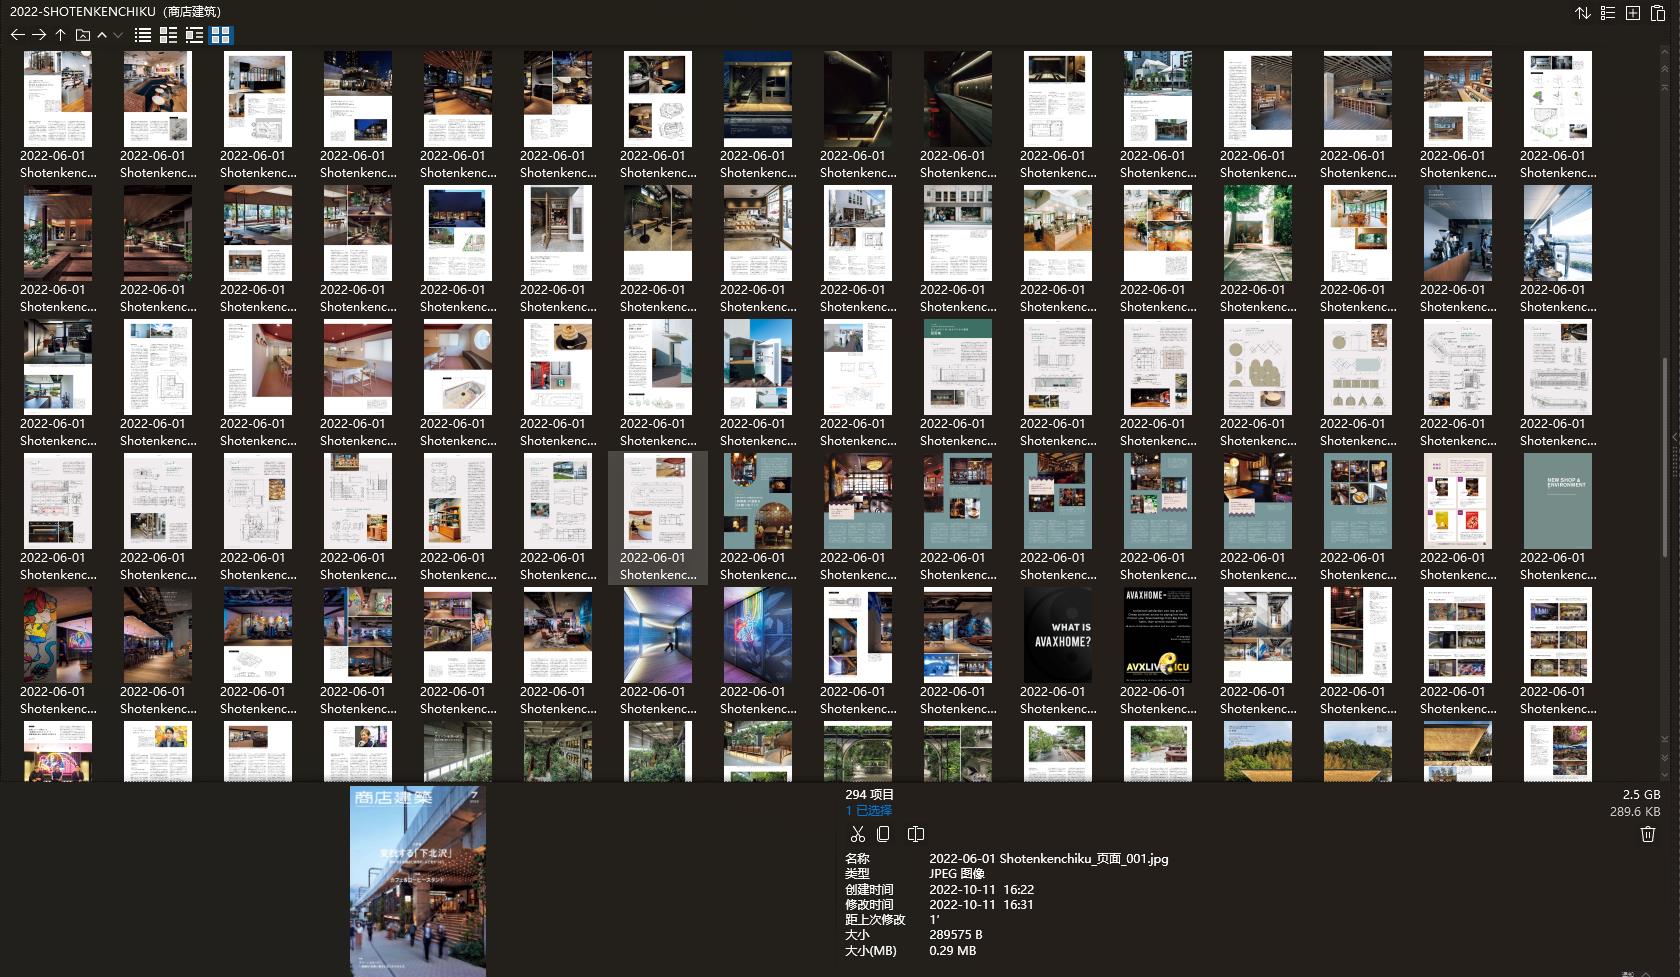 商店建筑设计杂志,Shotenkenchiku设计杂志,室内设计电子杂志,杂志下载,商店建筑杂志合集